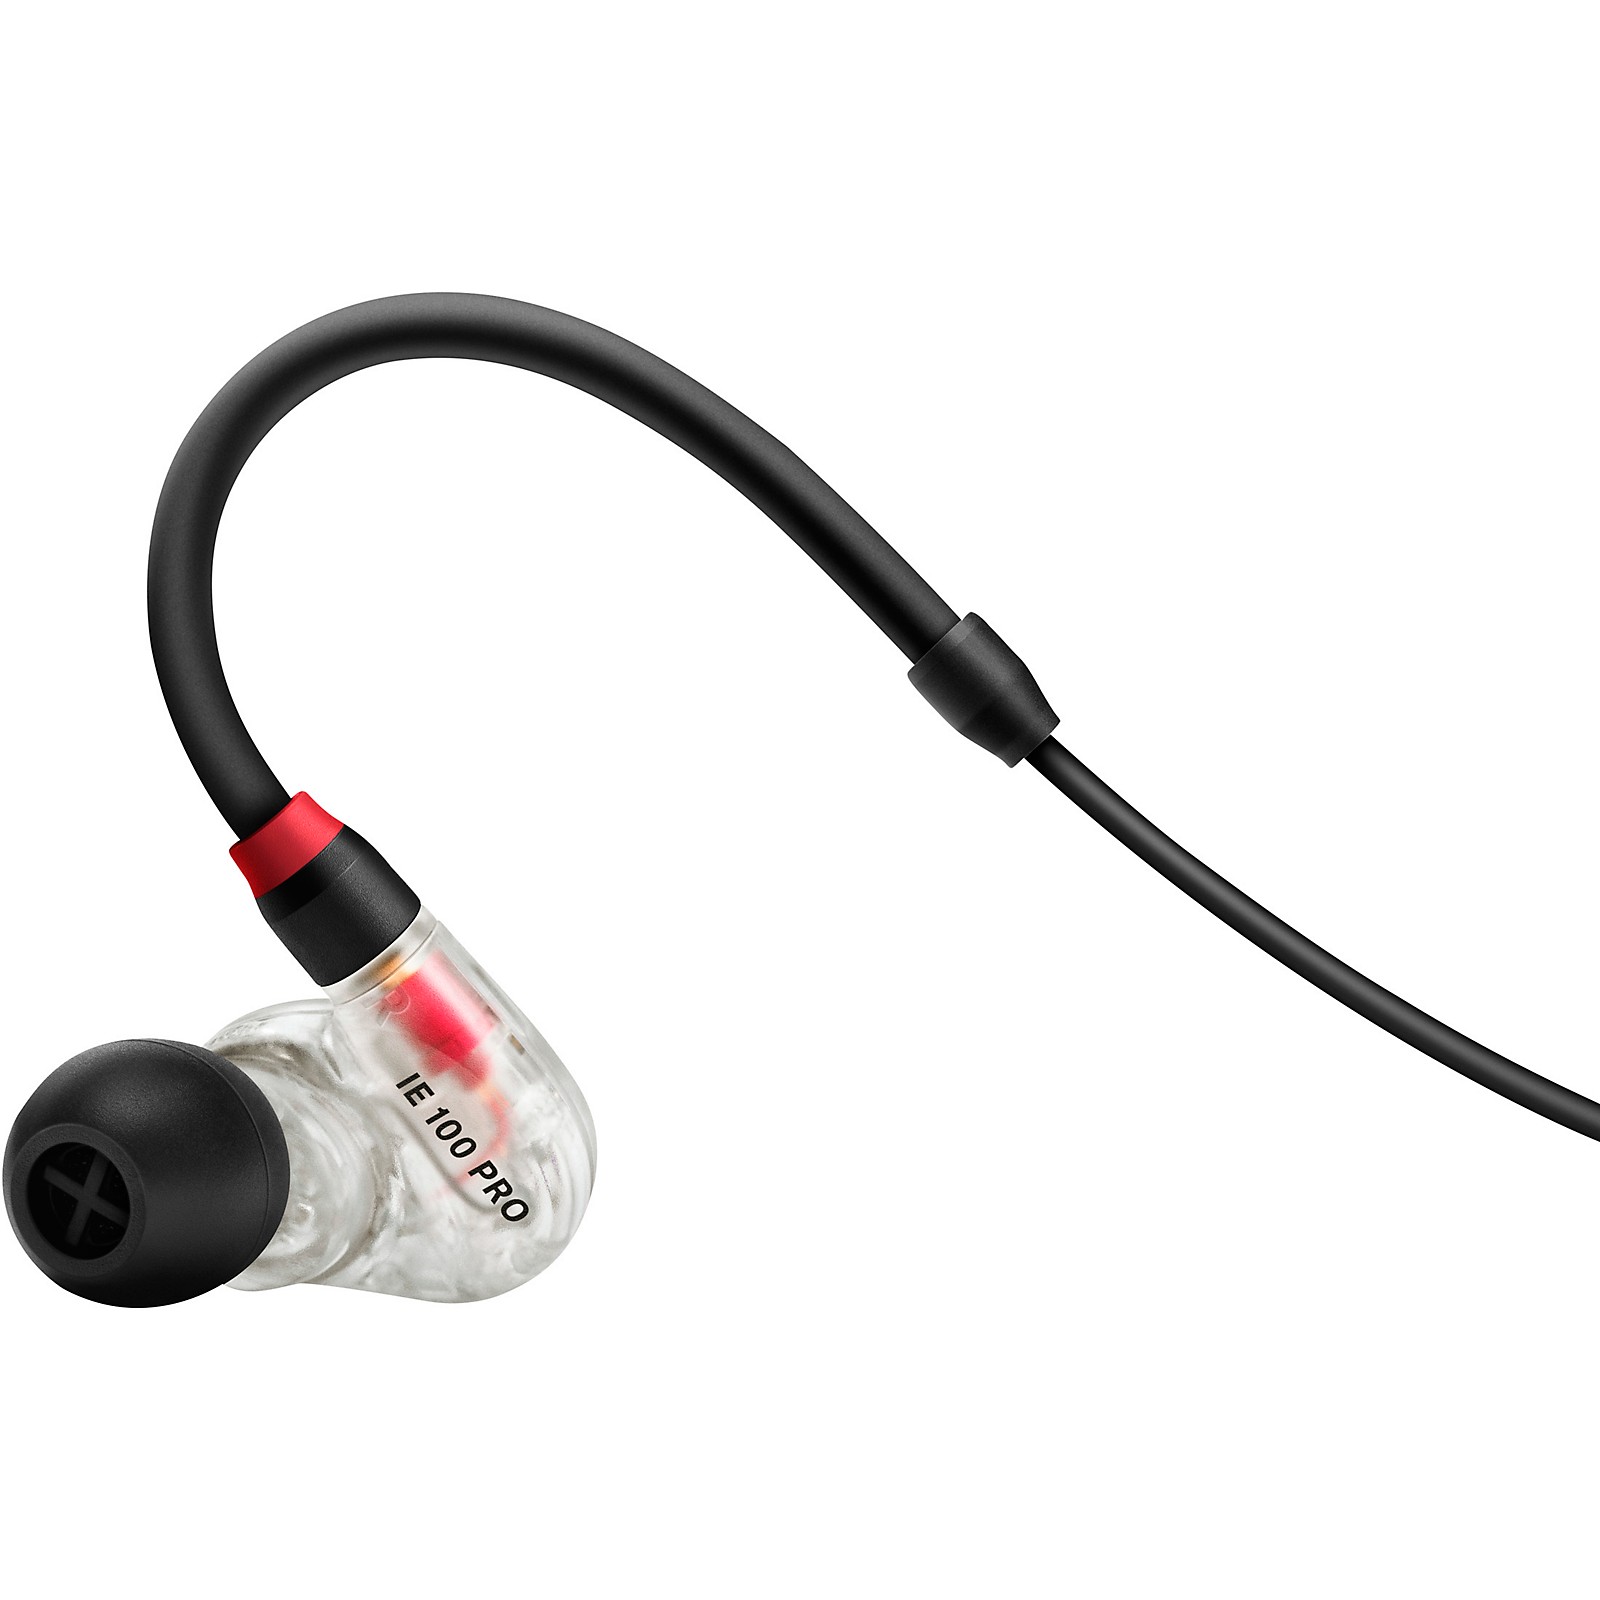 Audifonos de monitoreo In Ear Sennheiser IE 100 PRO wireless color